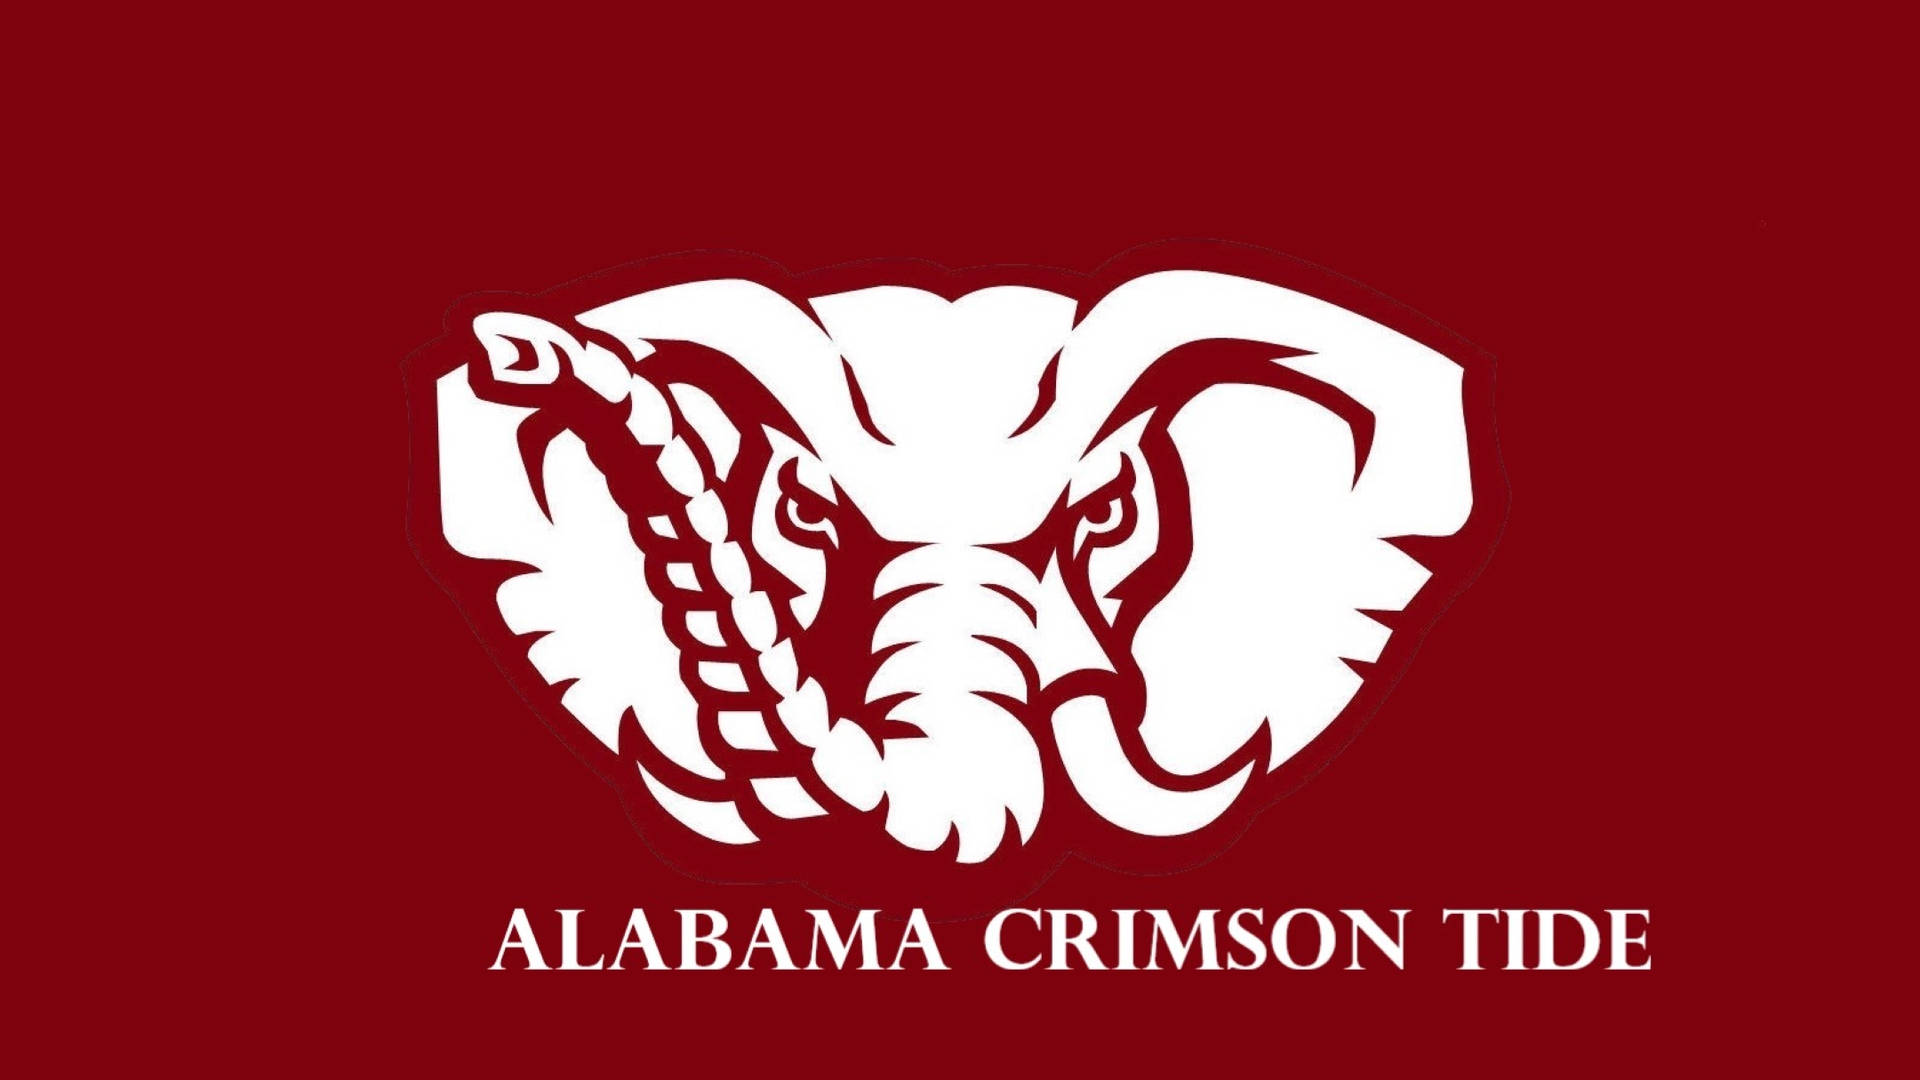 Alabama Crimson Tide White Elephant Background